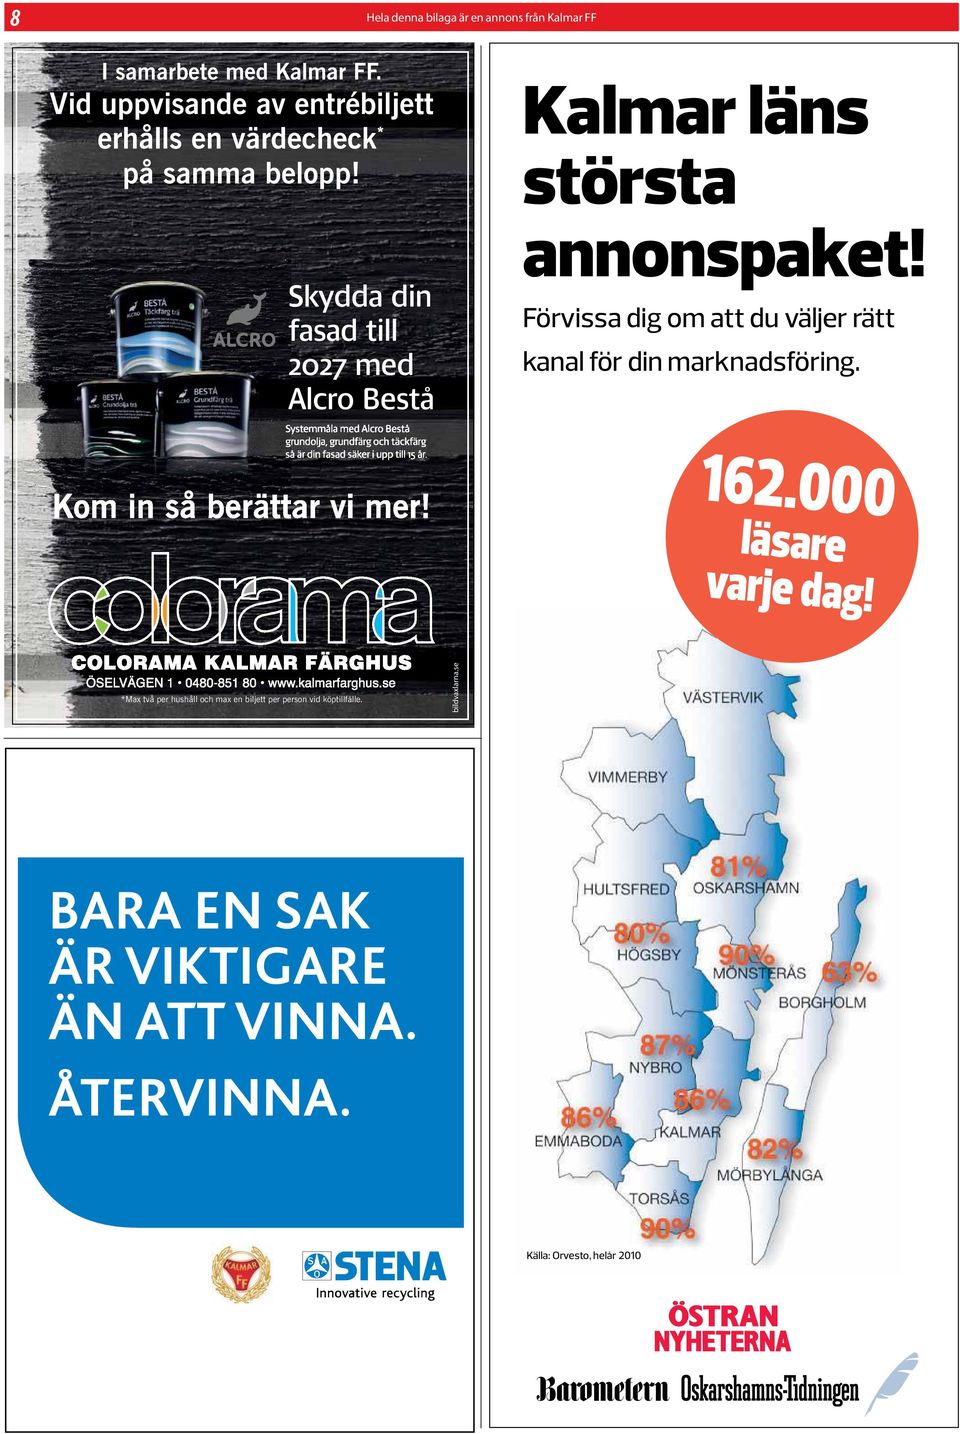 Skydda din fasad till 2027 med Alcro Bestå Kalmar läns största annonspaket!